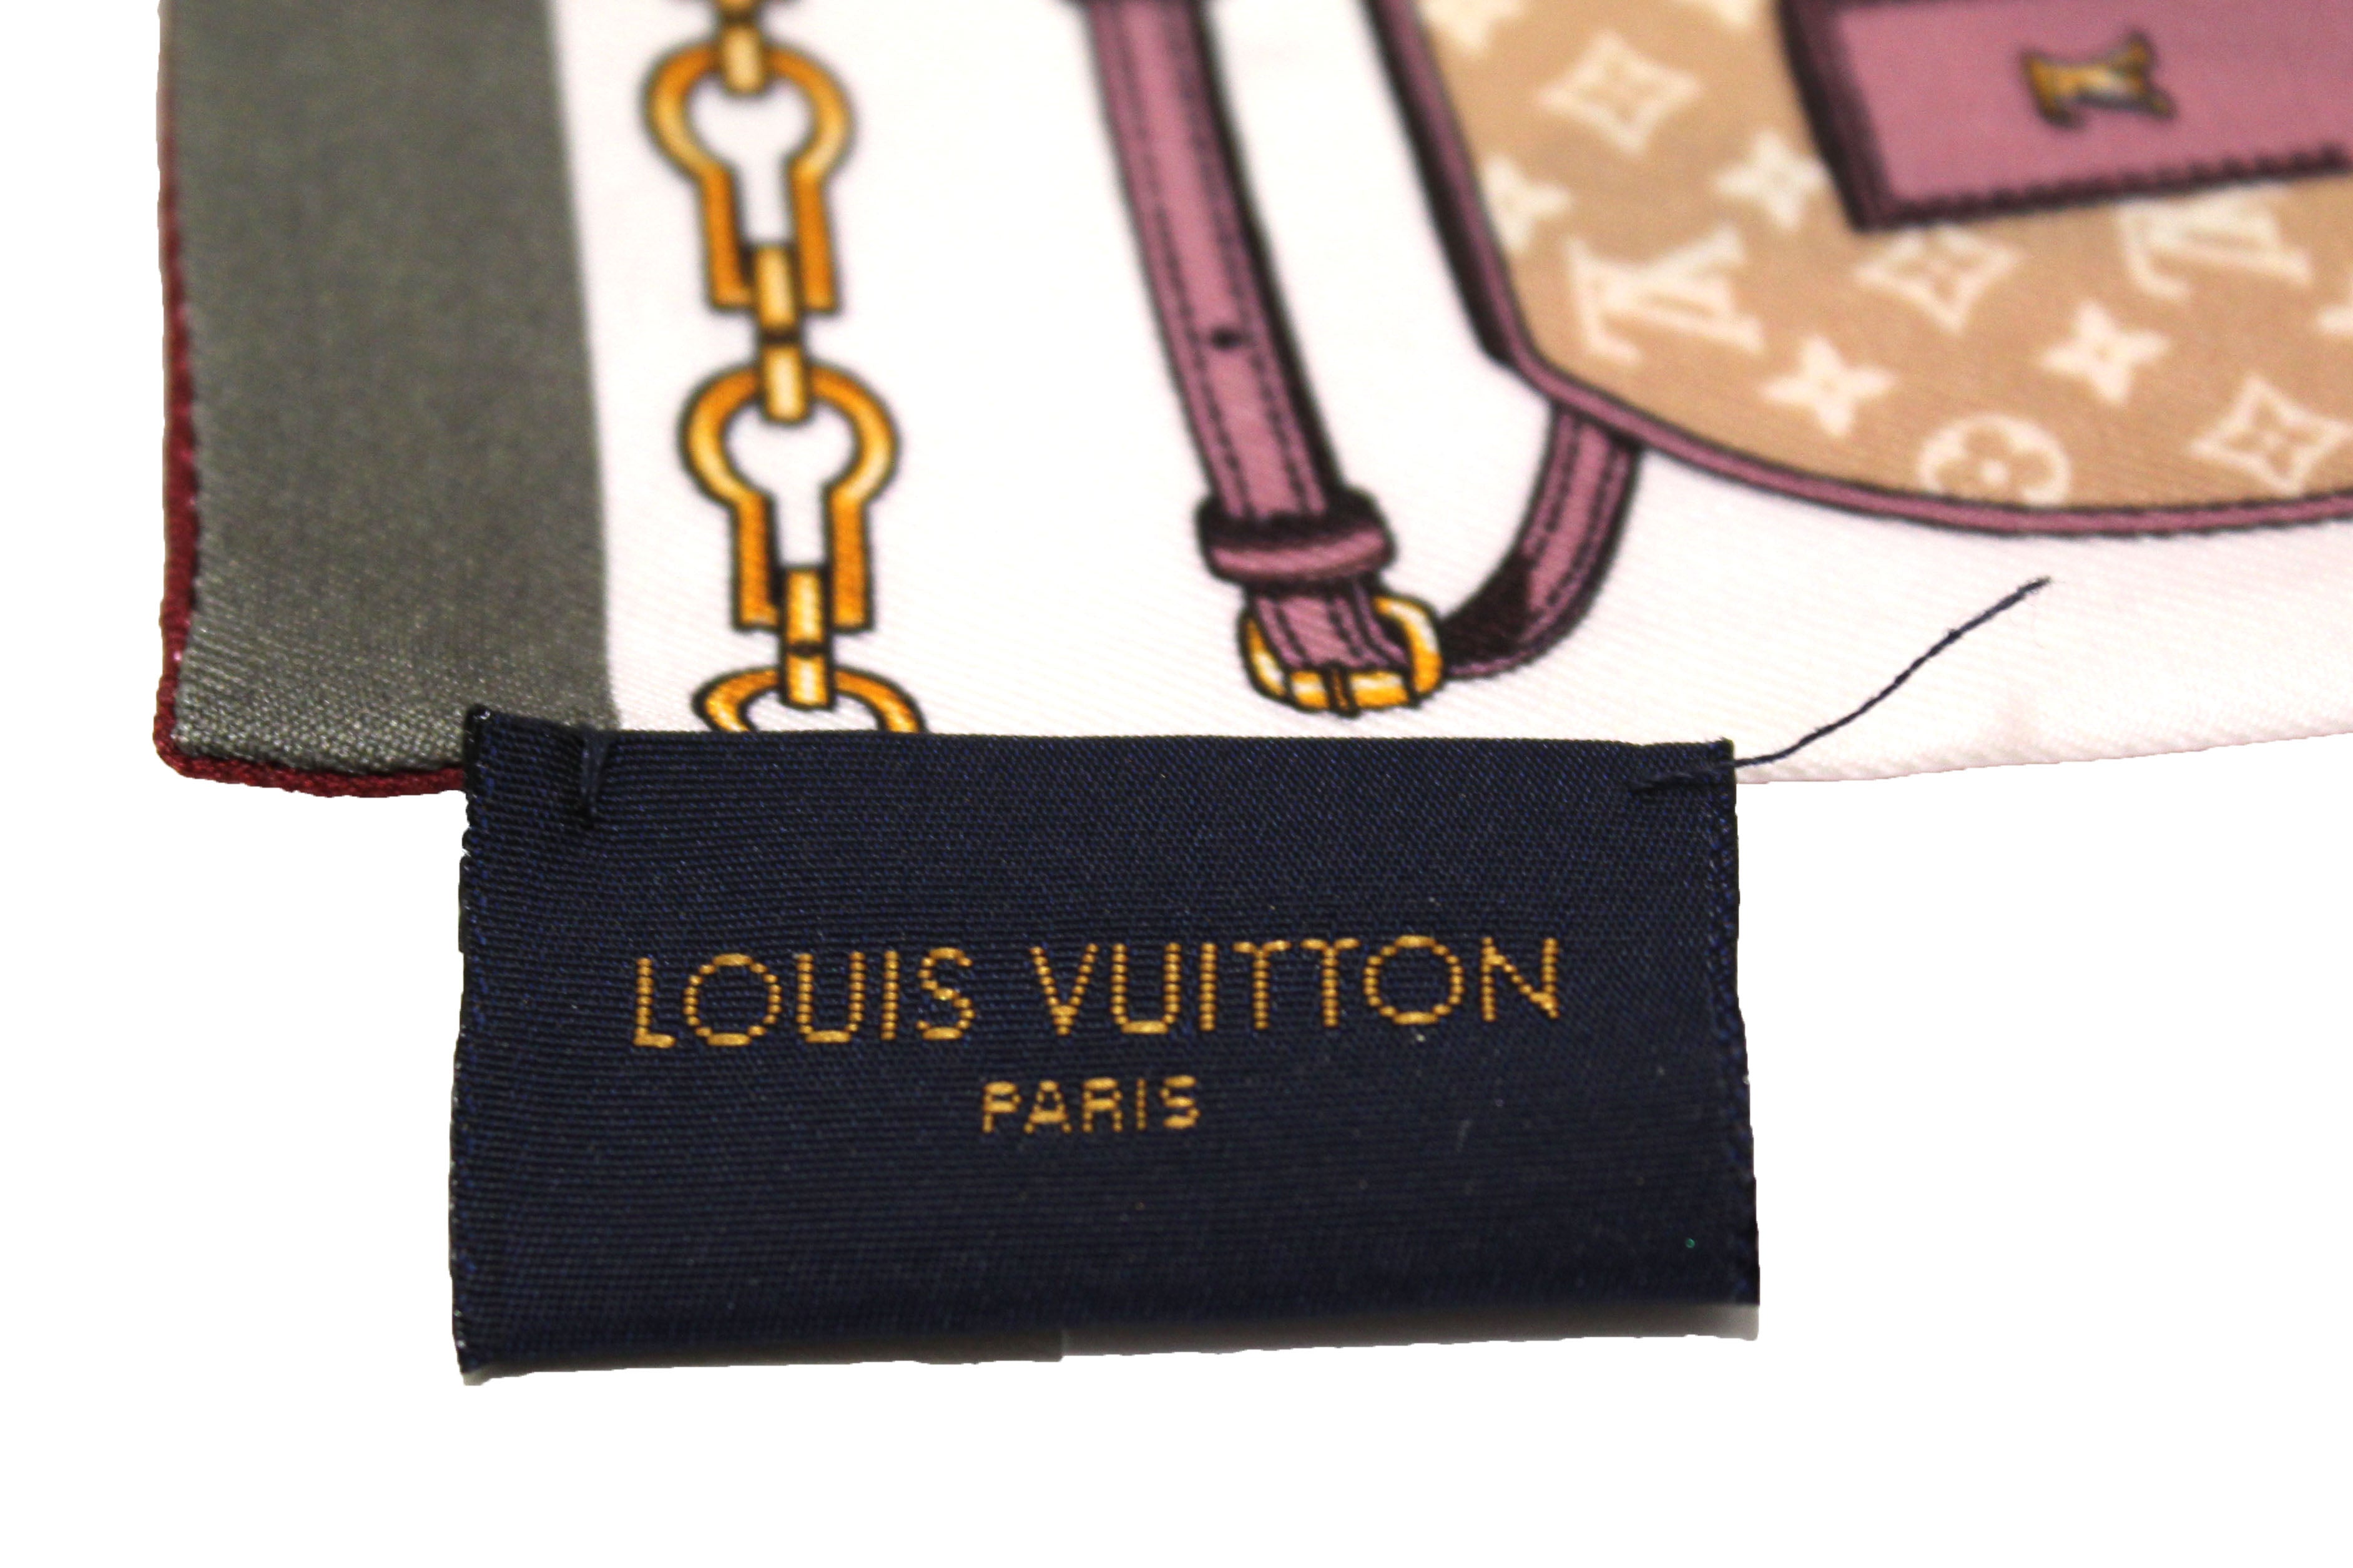 Louis Vuitton Skyline Bandeau Light Pink Silk